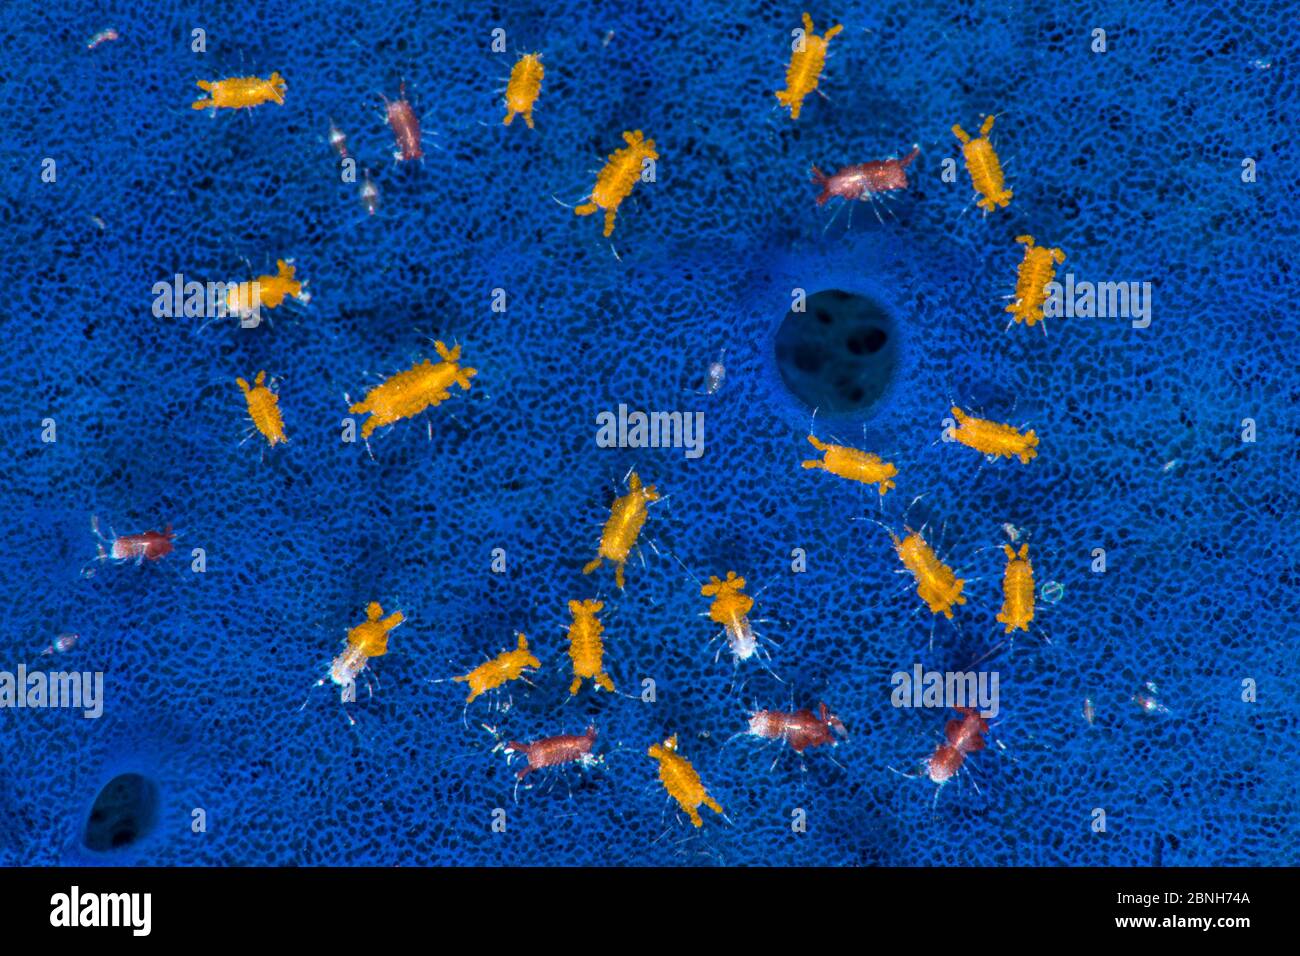 Aggregazione di piccoli isopodi (Santia sp.) che vivono sulla superficie di una spugna blu (Haliclona sp.), ci sono due varietà di colori qui, forse differenti Foto Stock